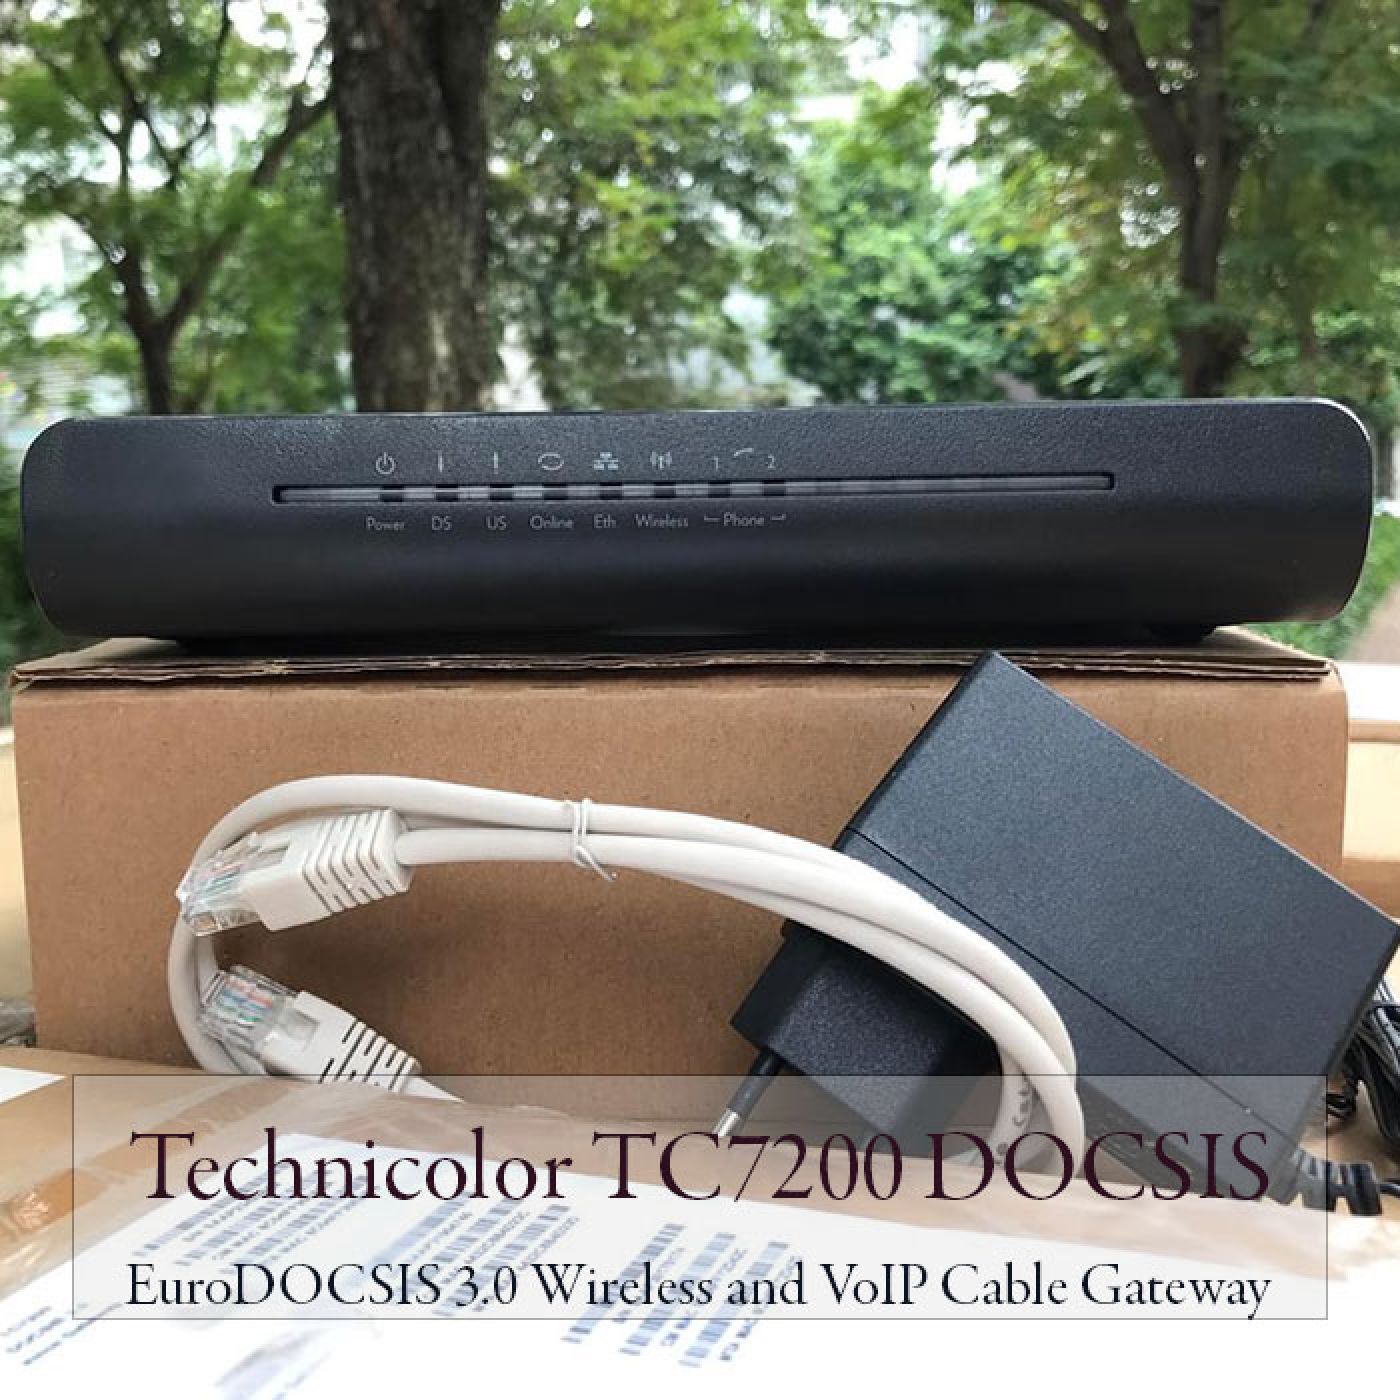 Modem wifi Technicolor TC7200 - Bộ phát wifi không dây dung lượng lớn, băng thông cao.